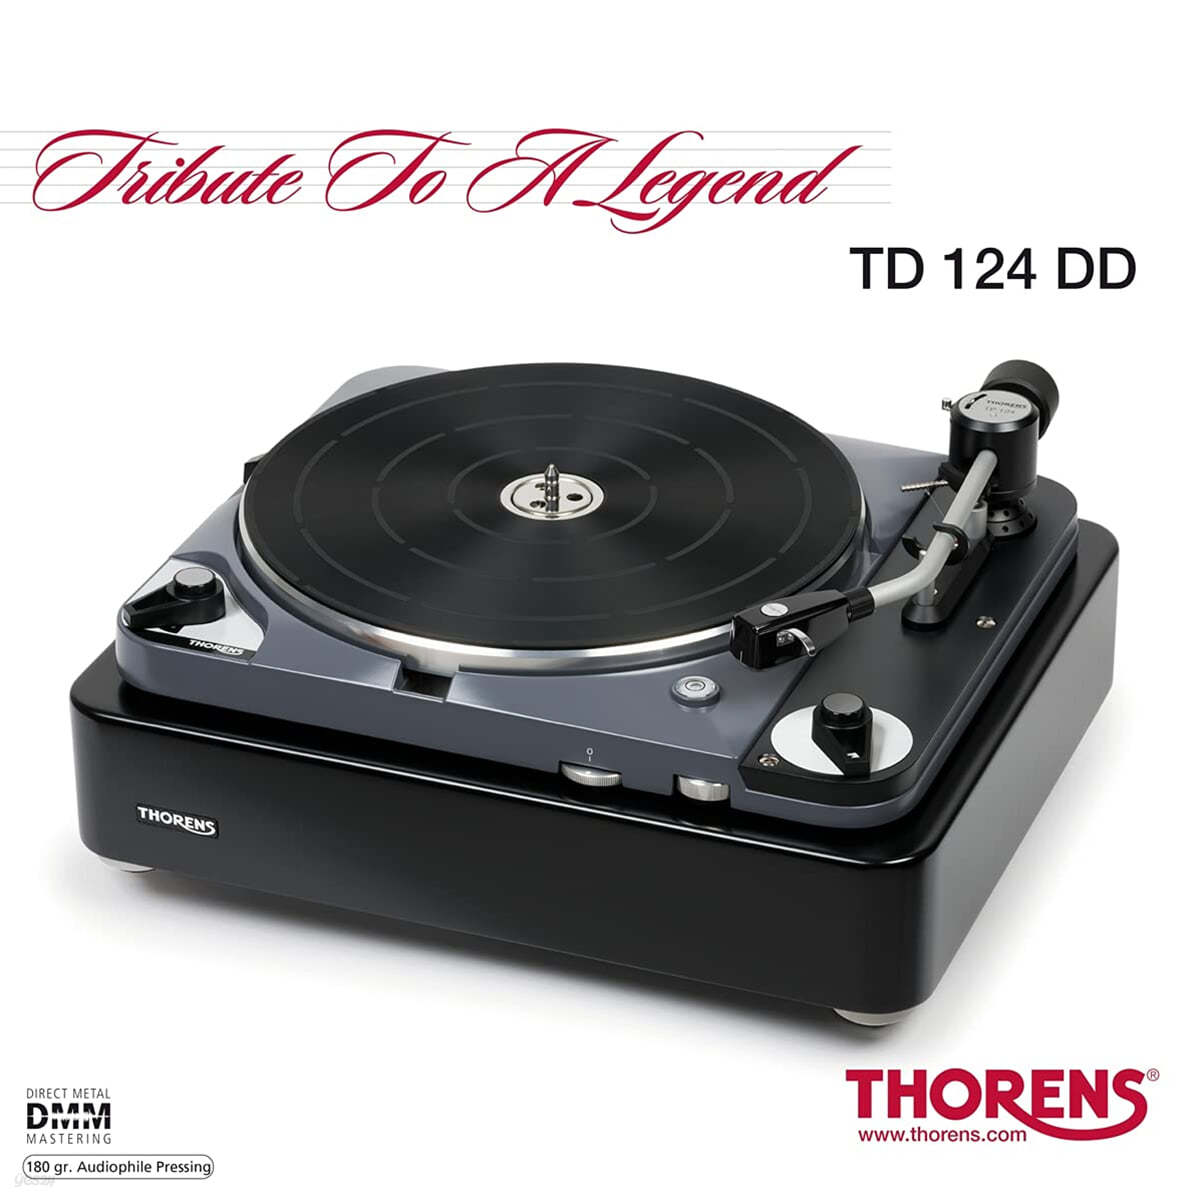 인아쿠스틱 레이블 2021년 재즈 컴필레이션 (Tribute To A Legend - Thorens TD 124 DD) [2LP]